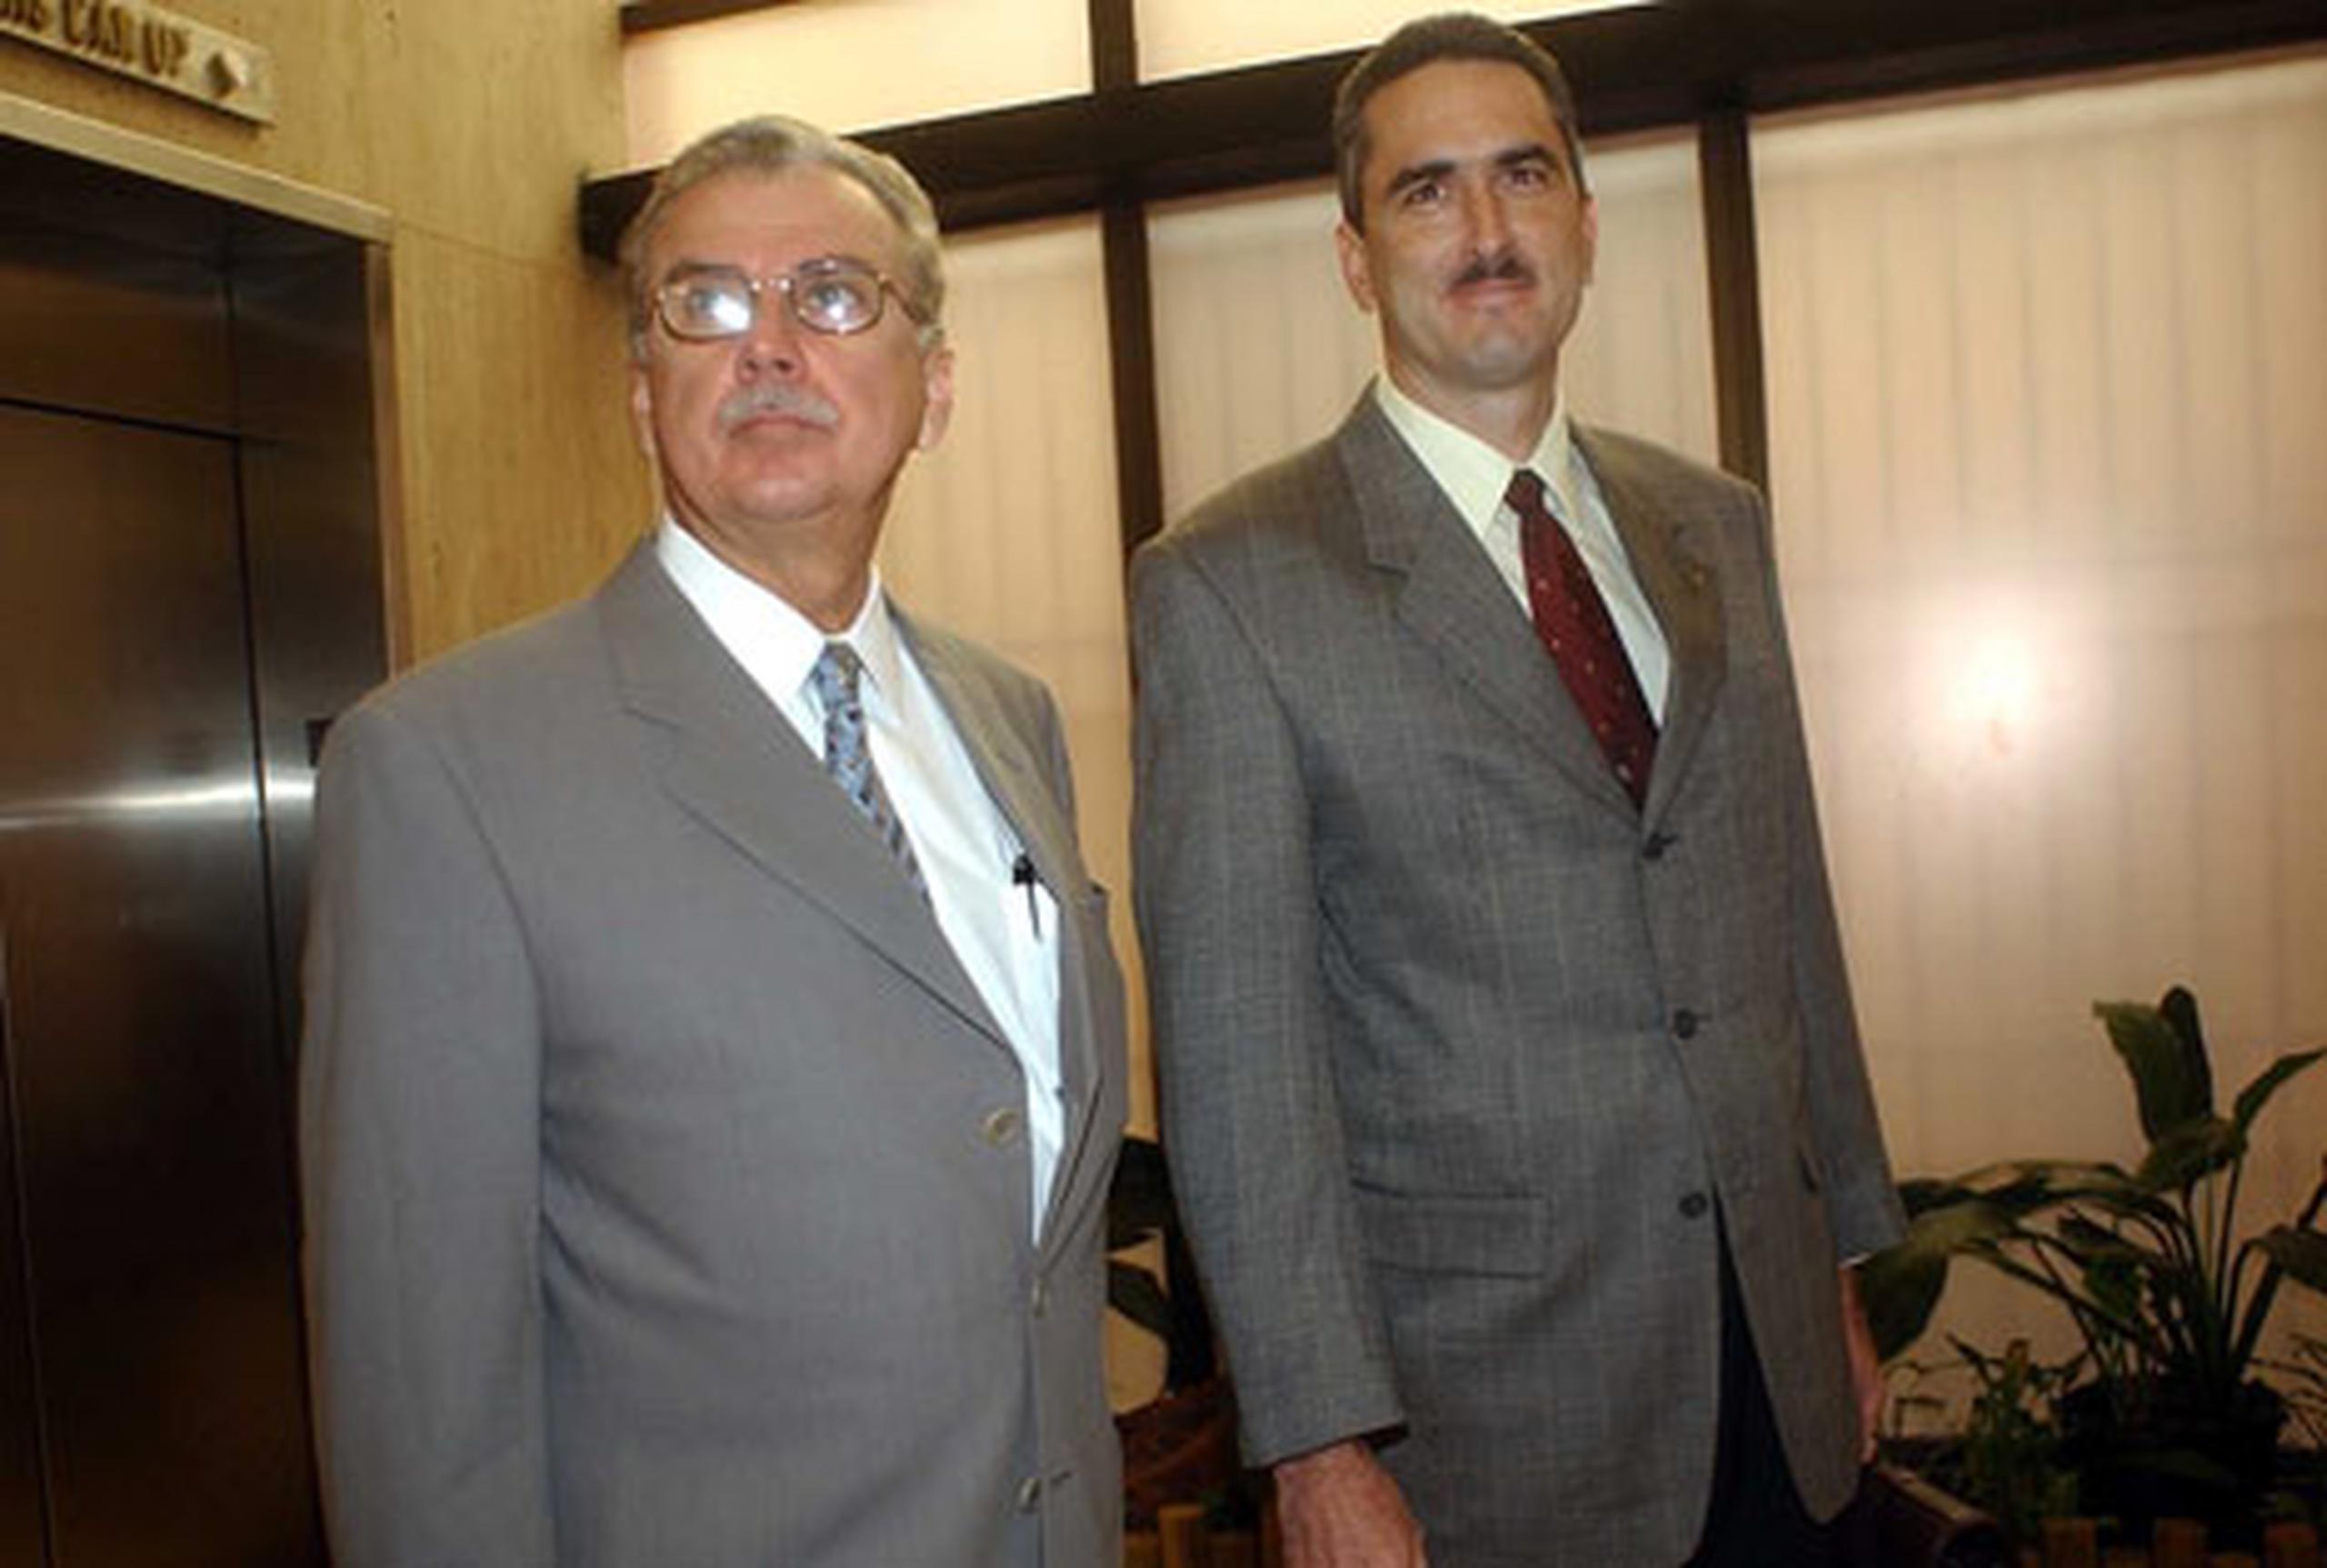 El abogado Luis Berríos es uno de los principales asesores del presidente del Senado, Thomas Rivera Schatz. En la foto, cuando representaban al ex gobernador Rosselló en el pleito por la pensión.(Archivo 2004)